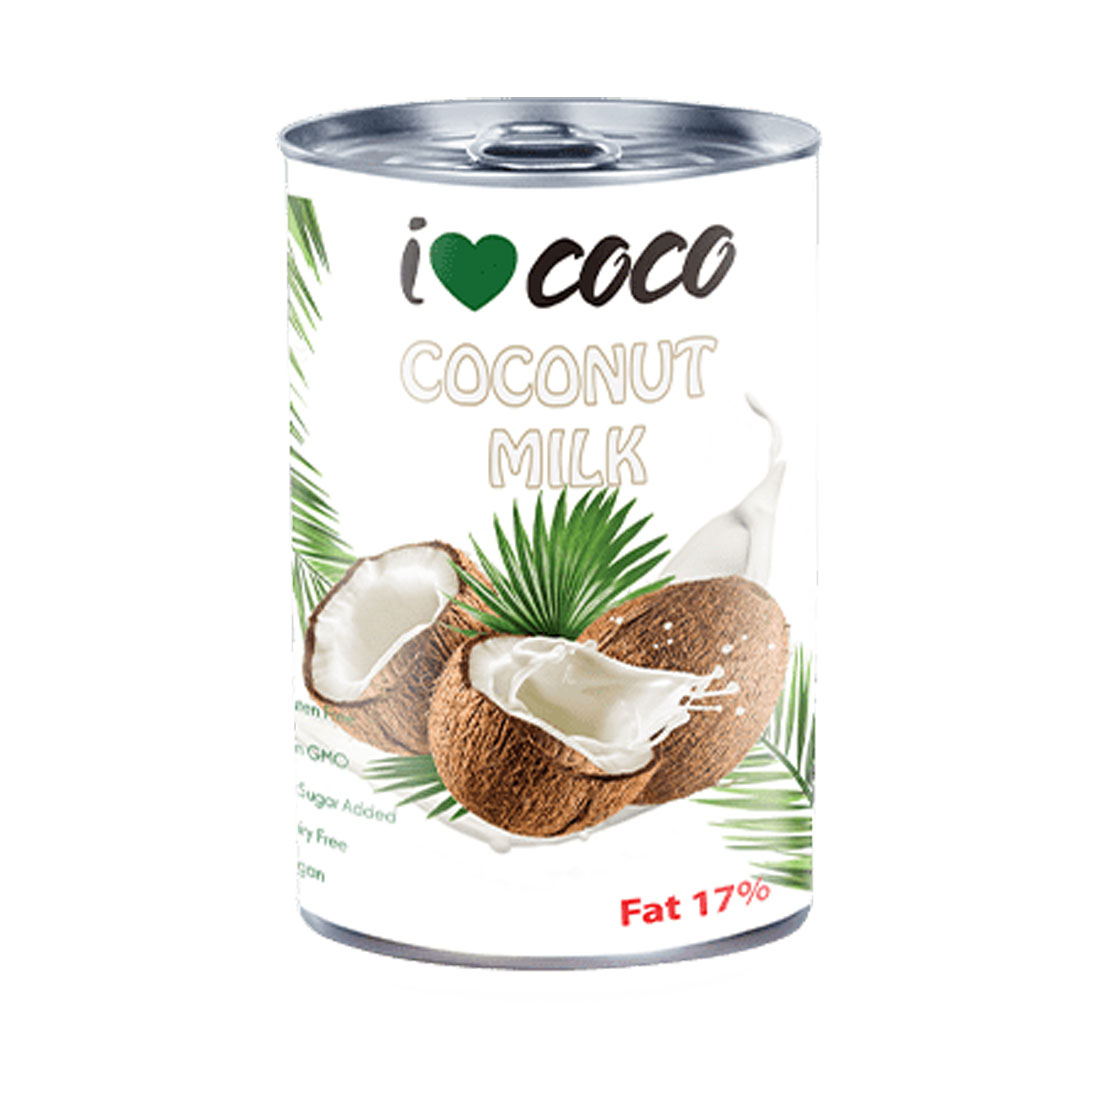 I Love Coco - Coconut Milk